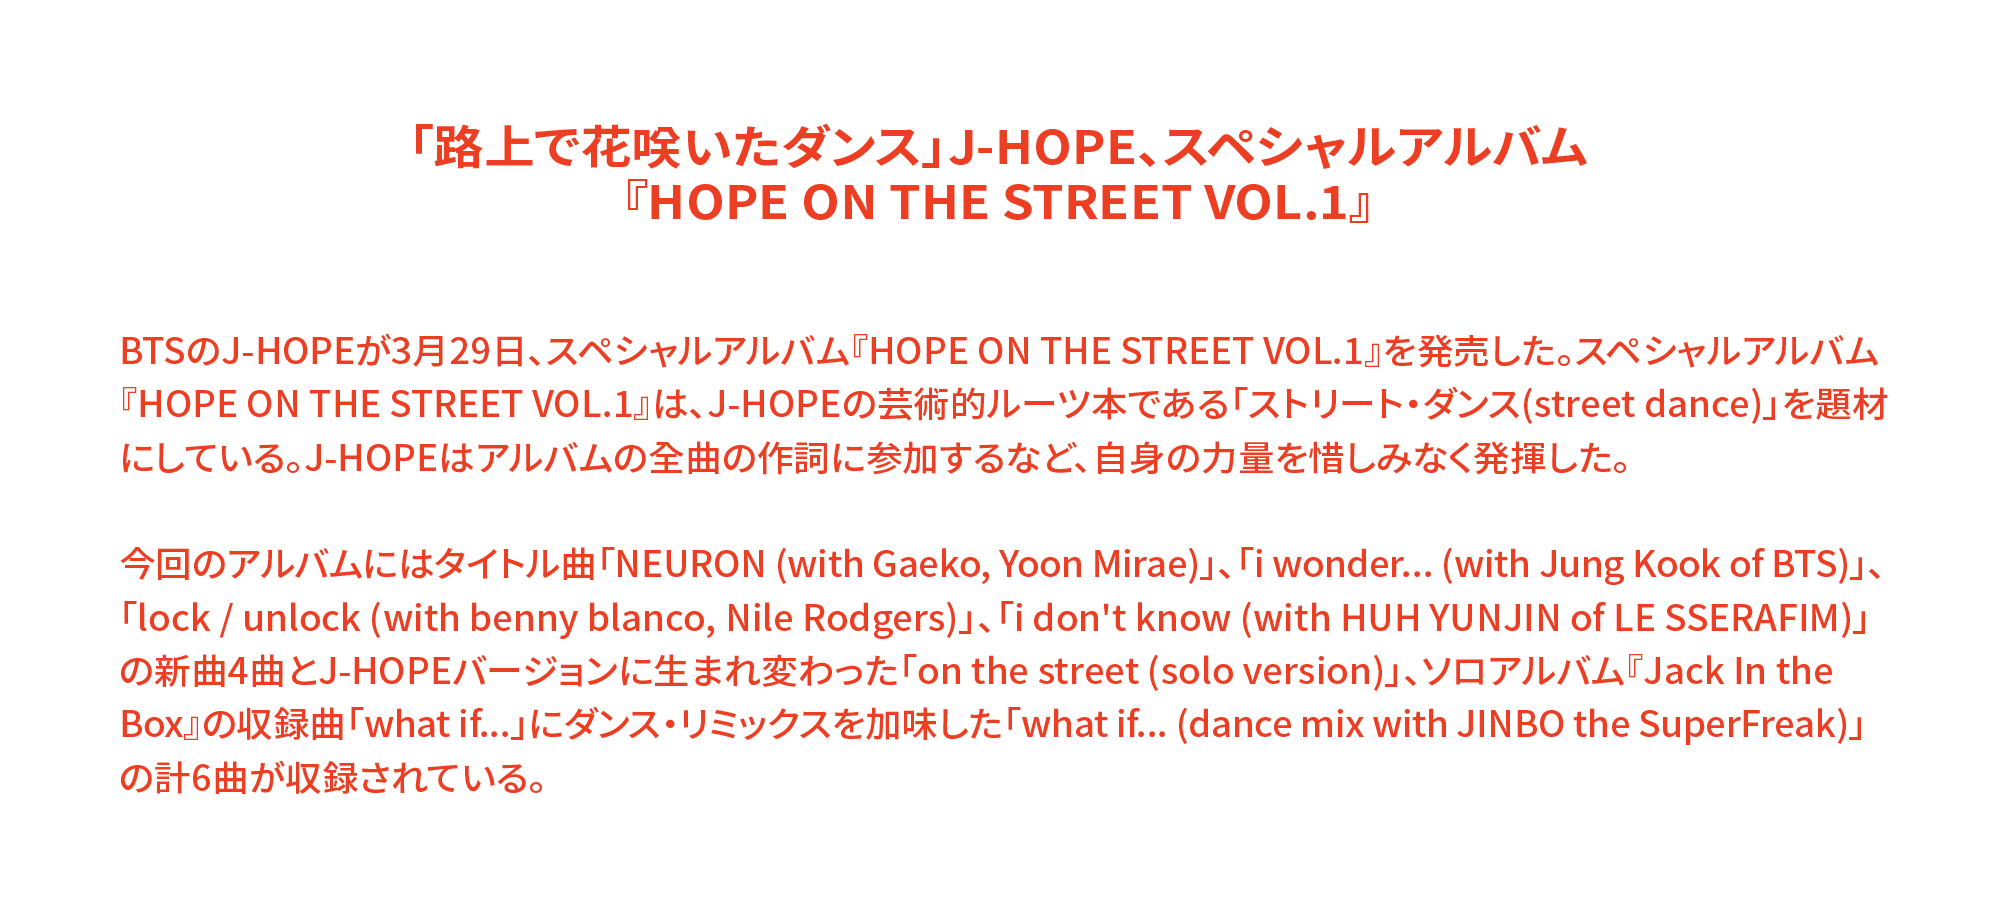 「路上で花咲いたダンス」J-HOPE、スペシャルアルバム 『HOPE ON THE STREET VOL.1』 BTSのJ-HOPEが3月29日、スペシャルアルバム『HOPE ON THE STREET VOL.1』を発売した。スペシャルアルバム『HOPE ON THE STREET VOL.1』は、J-HOPEの芸術的ルーツ本である「ストリート・ダンス(street dance)」を題材にしている。J-HOPEはアルバムの全曲の作詞に参加するなど、自身の力量を惜しみなく発揮した。 今回のアルバムにはタイトル曲「NEURON (with Gaeko, Yoon Mirae)」、「i wonder... (with Jung Kook of BTS)」、「lock / unlock (with benny blanco, Nile Rodgers)」、「i don't know (with HUH YUNJIN of LE SSERAFIM)」の新曲4曲とJ-HOPEバージョンに生まれ変わった「on the street (solo version)」、ソロアルバム『Jack In the Box』の収録曲「what if...」にダンス・リミックスを加味した「what if... (dance mix with JINBO the SuperFreak)」の計6曲が収録されている。